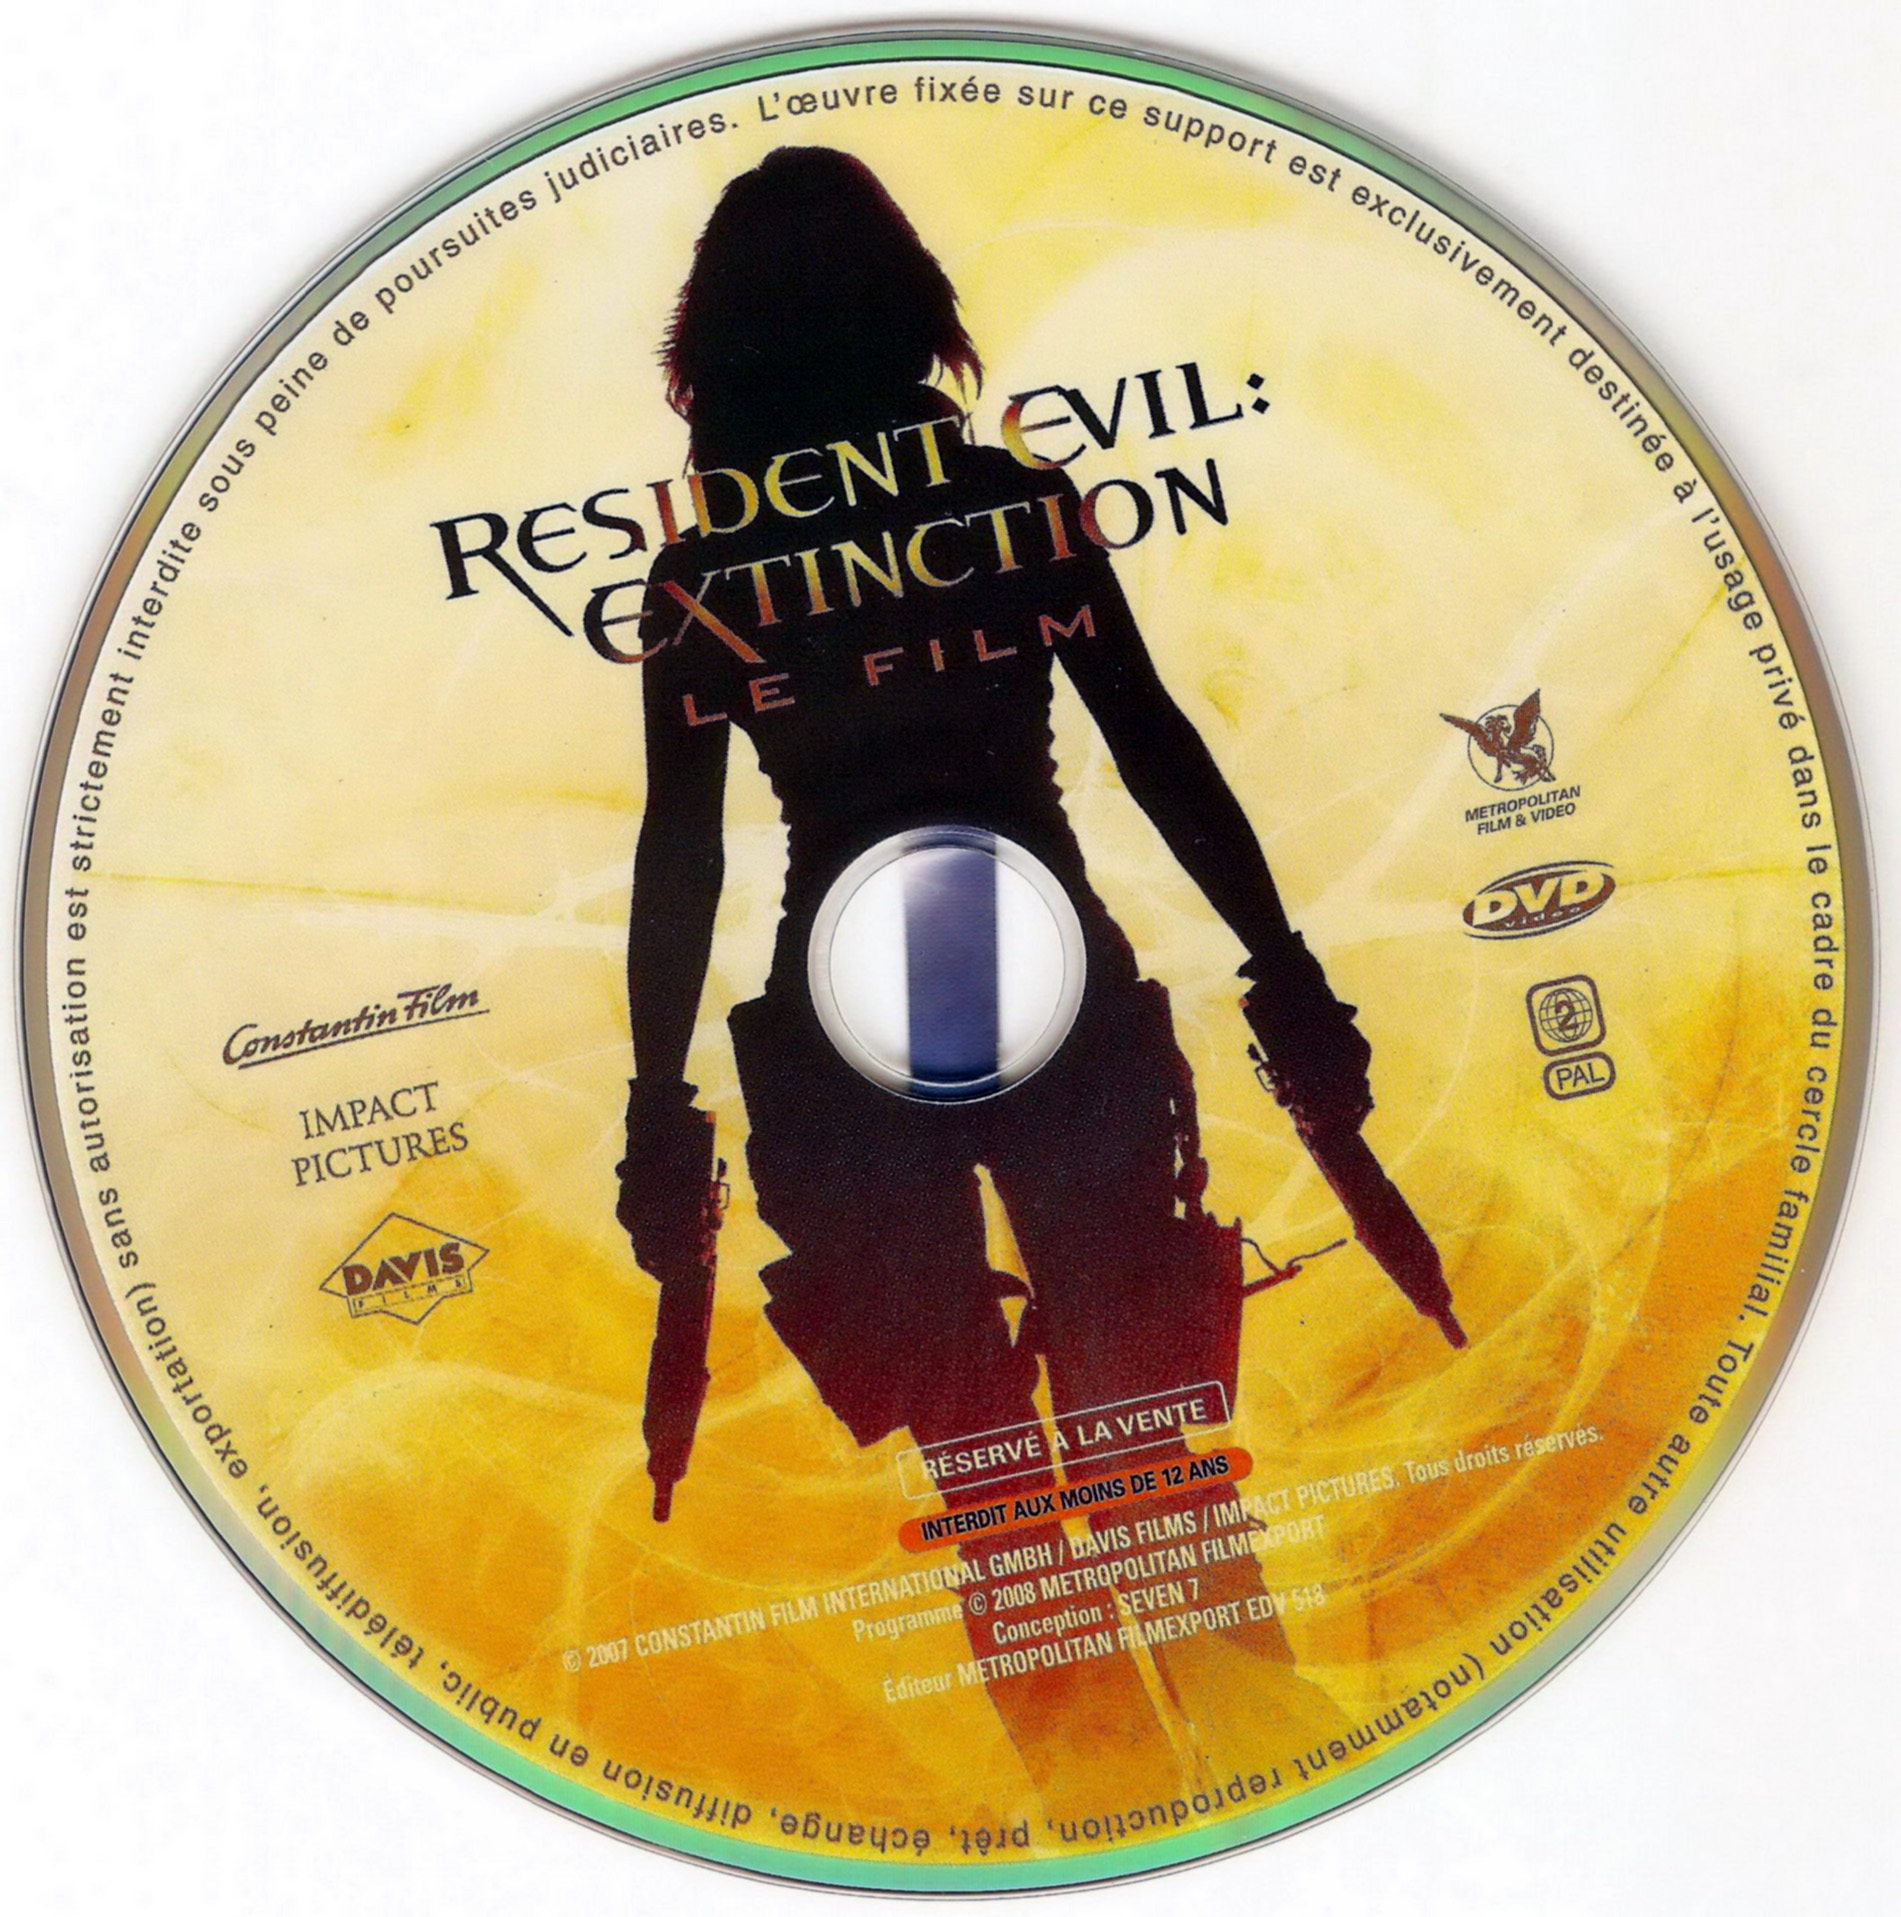 Resident evil extinction DISC 1